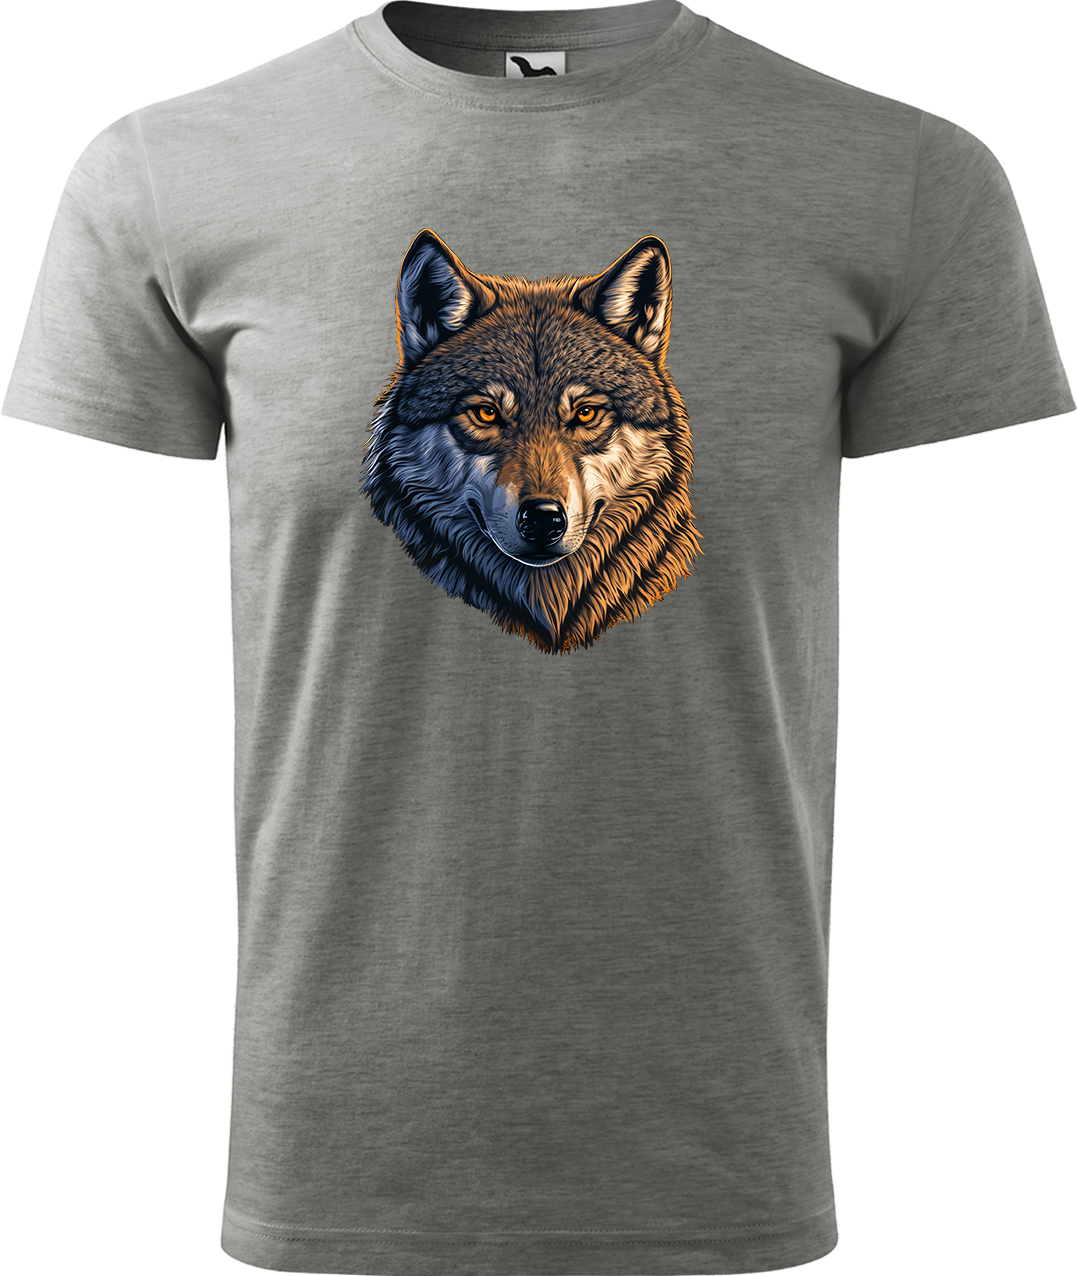 Pánské tričko s vlkem - Hlava vlka Velikost: XL, Barva: Tmavě šedý melír (12), Střih: pánský